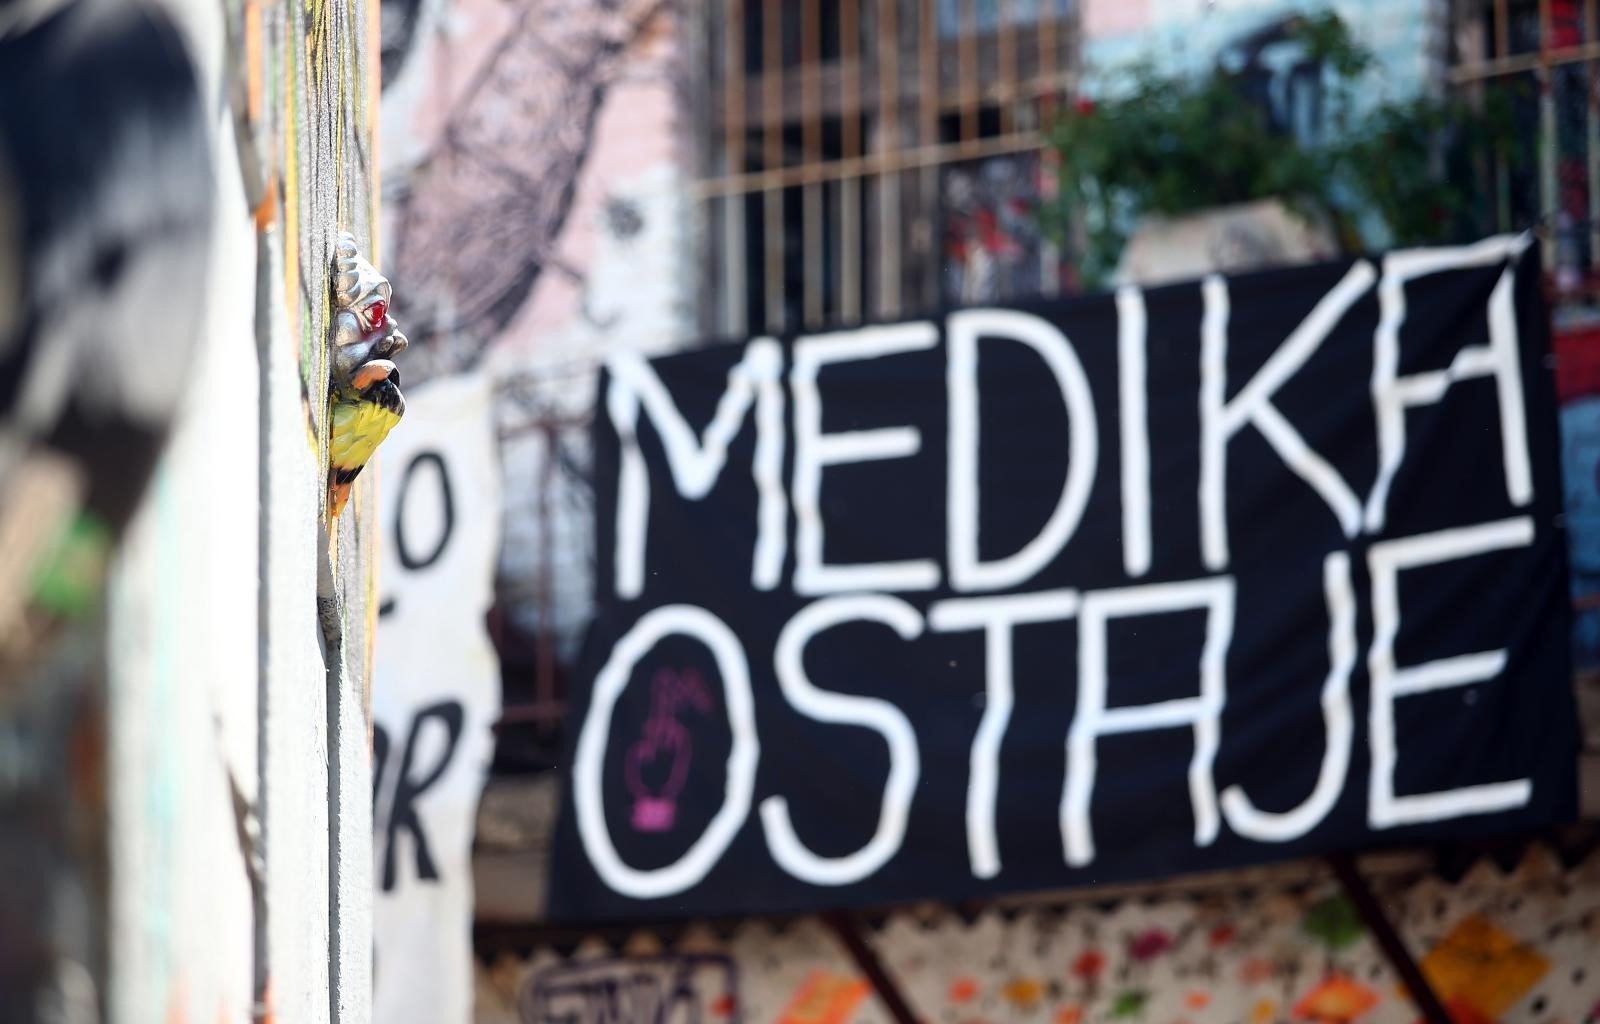 12.05.2017., Zagreb - U galeriji “Siva” unutar kompleksa bivse tvornice lijekova Medika,  odrzana konferencija za novinare o zatvaranju Medike.
Photo: Slavko Midzor/PIXSELL